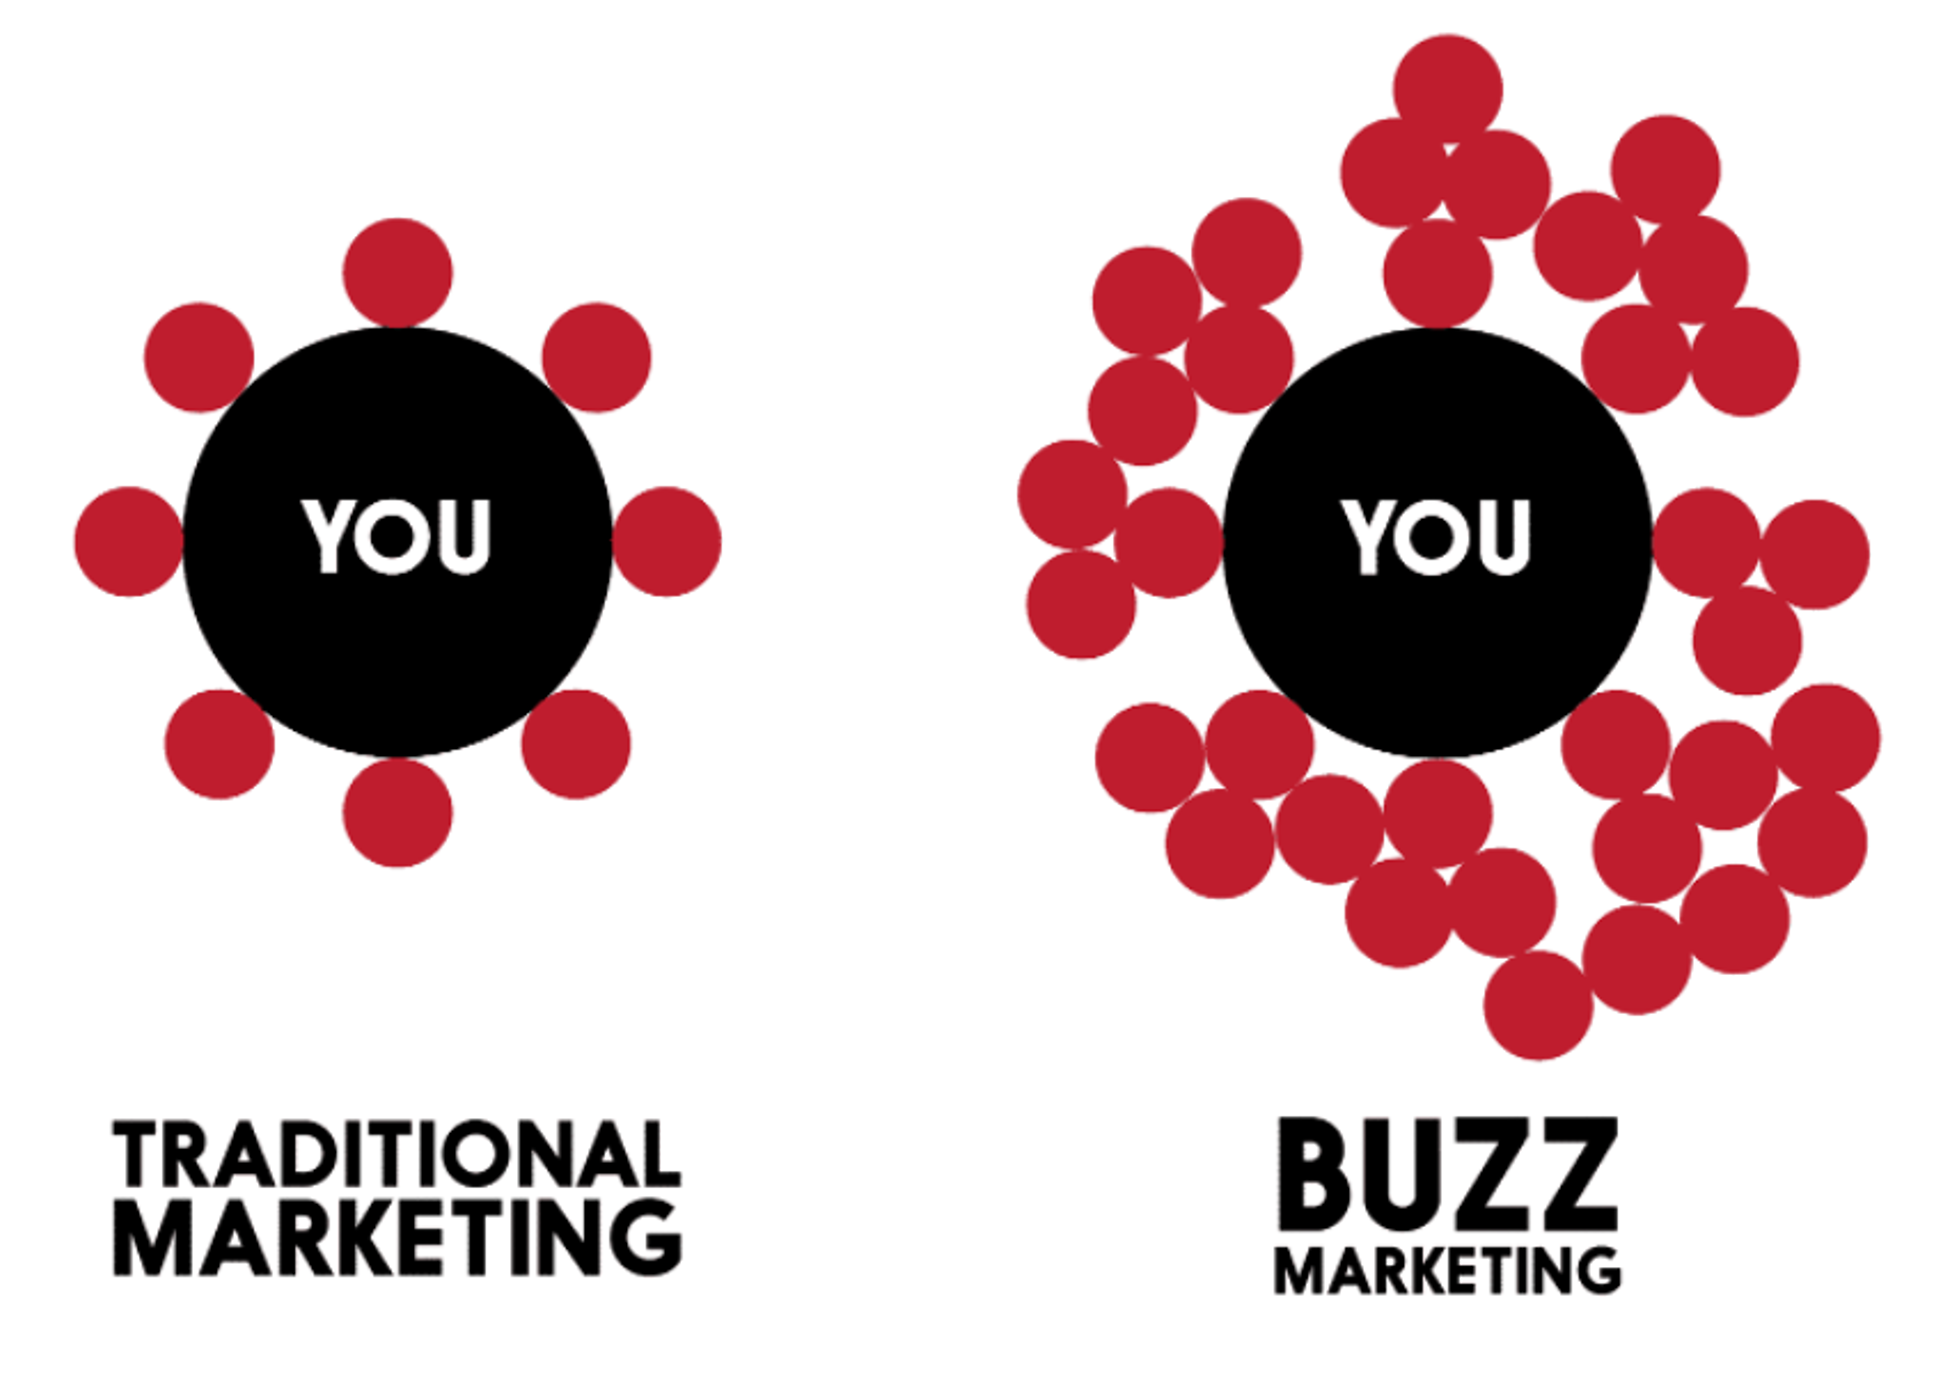 campaña buzz marketing ejemplo